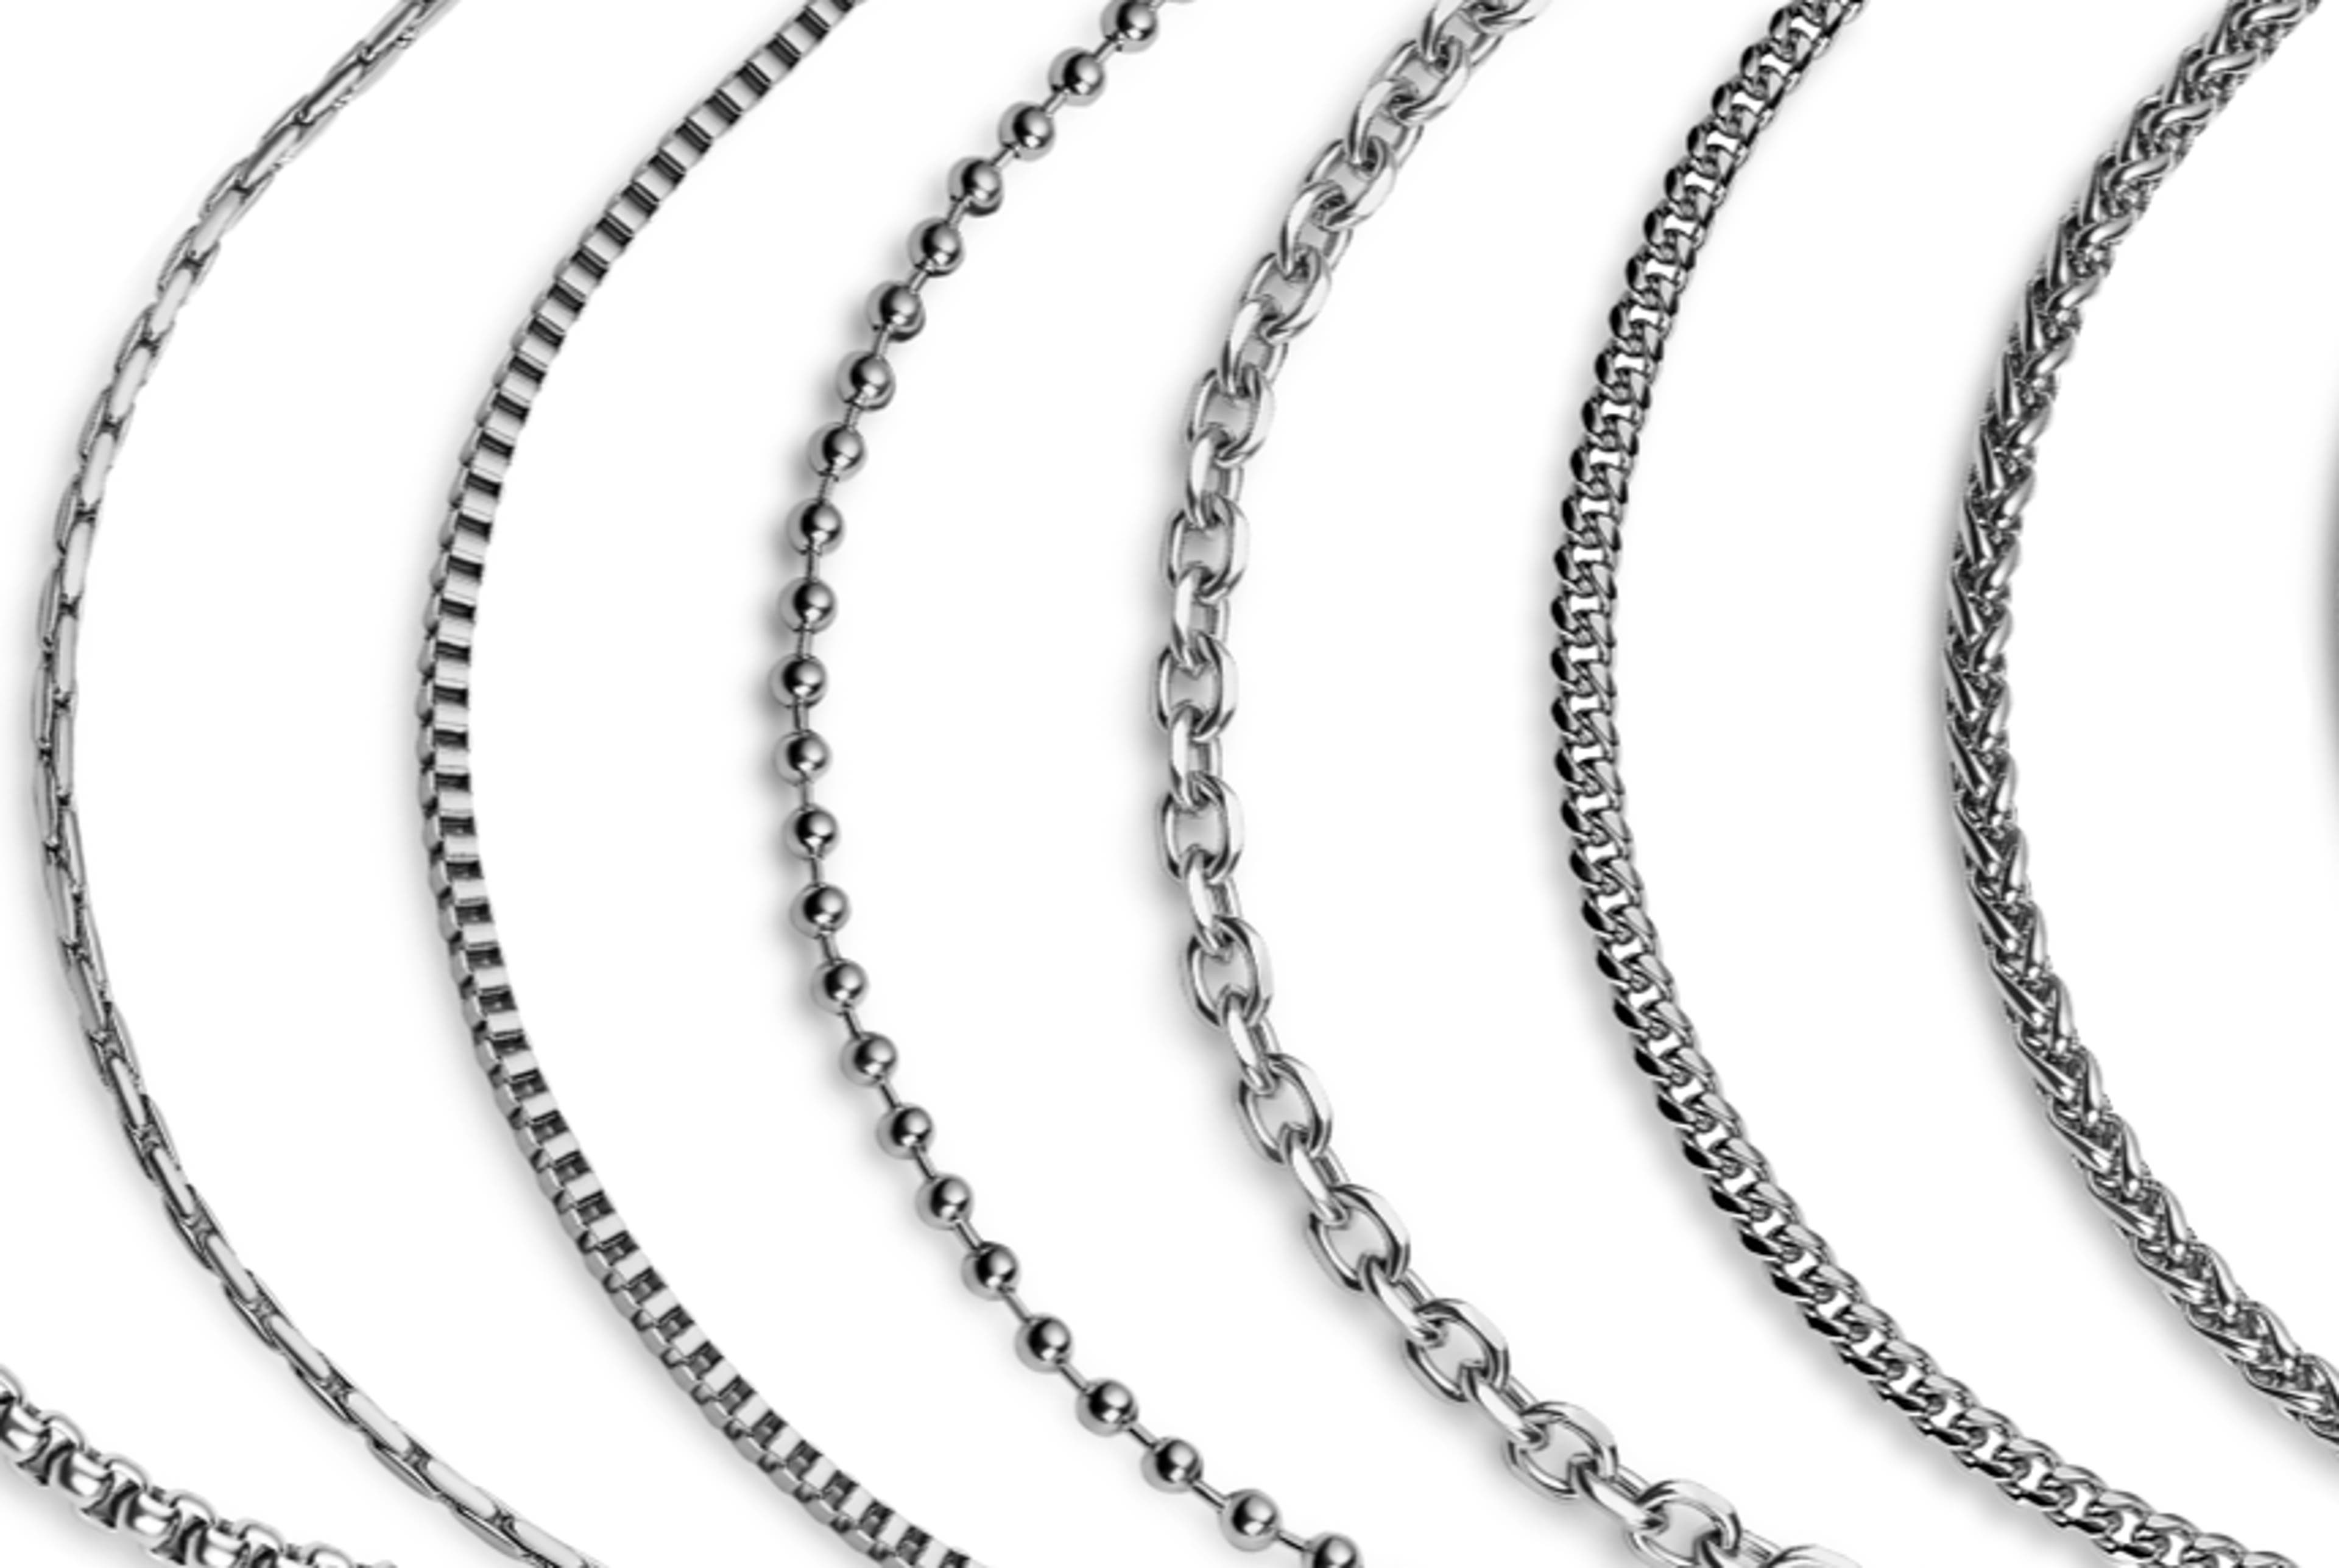 Les 9 Types de mailles & chaînes de colliers les plus populaires pour les hommes